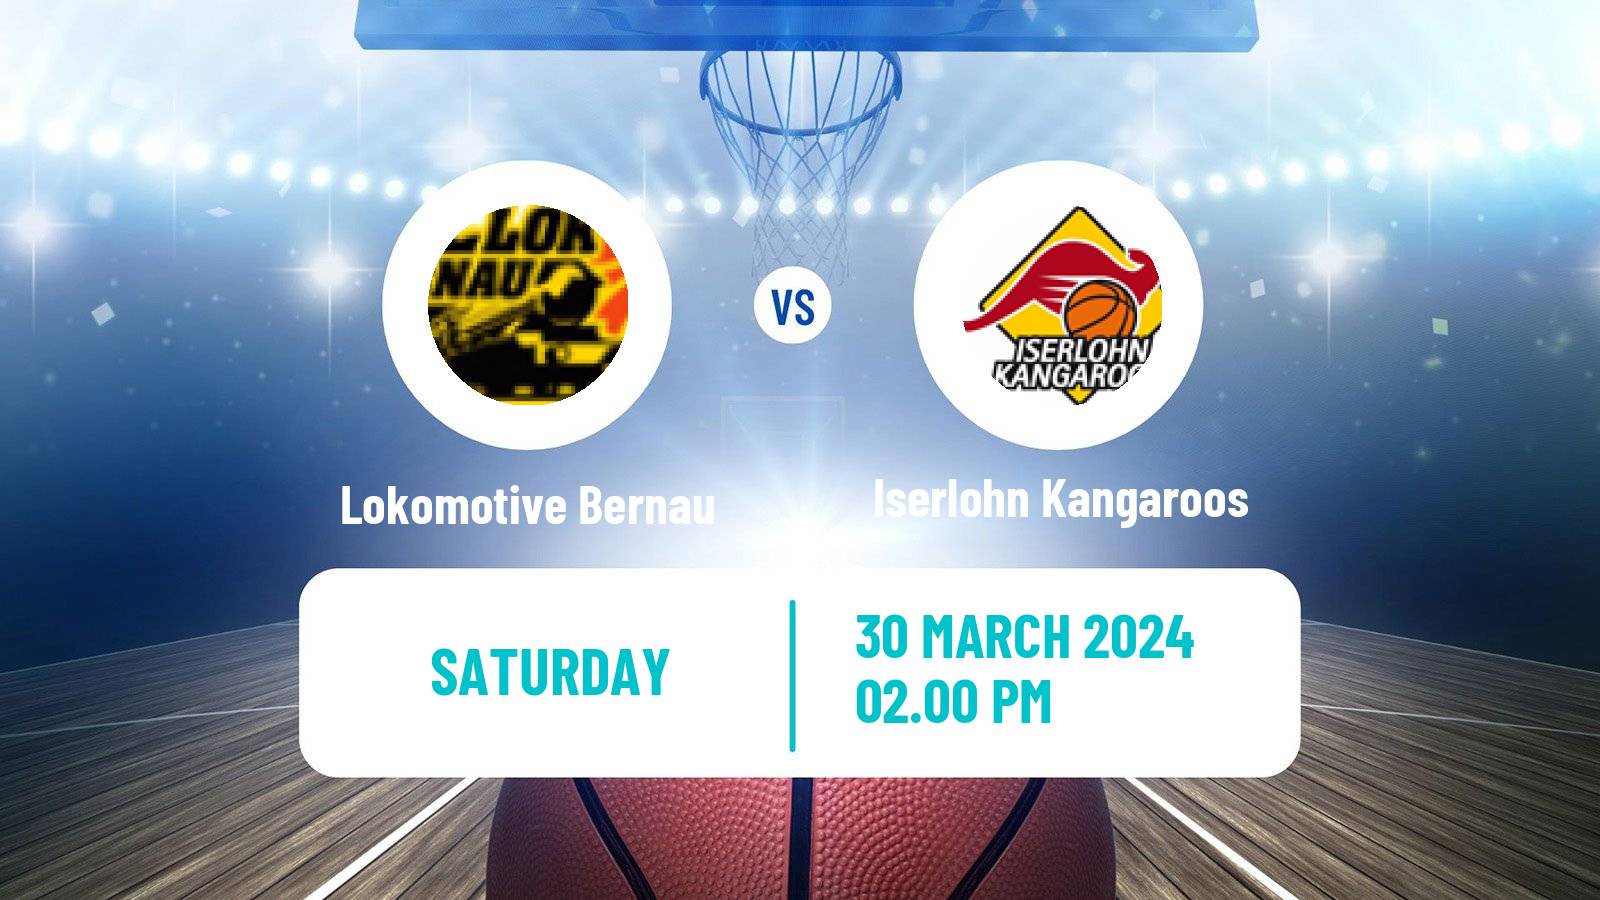 Basketball German Pro B Basketball Lokomotive Bernau - Iserlohn Kangaroos